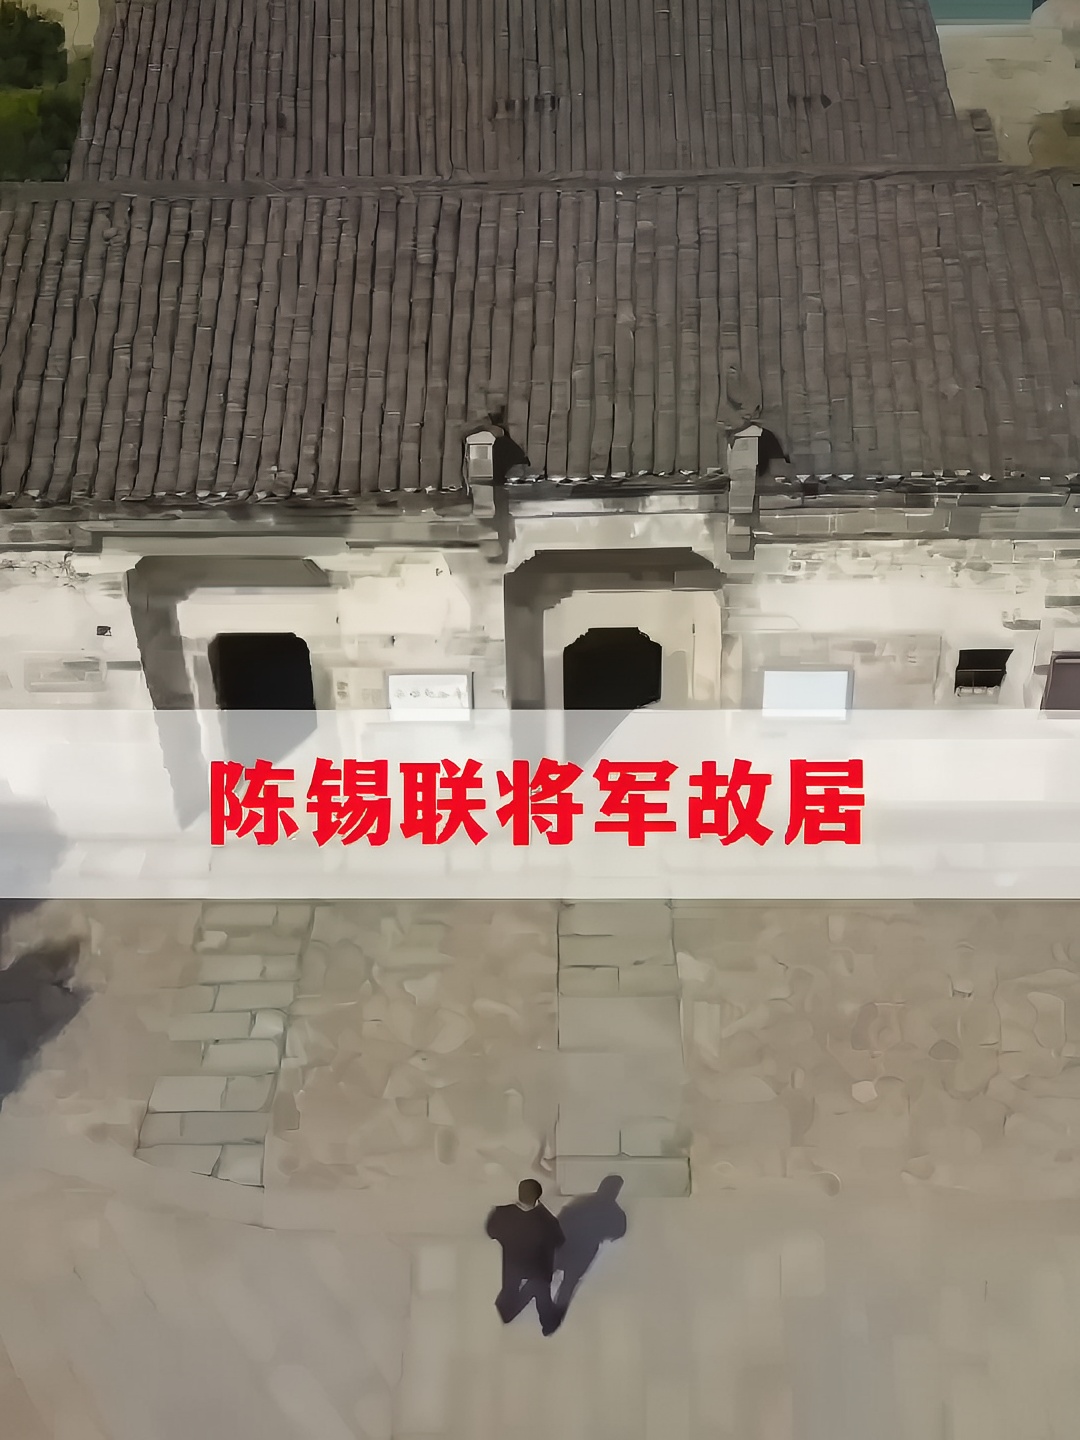 陈锡联将军故居，传统翘角式民居，砖瓦结构 #跟我走遍中国#旅行大玩家